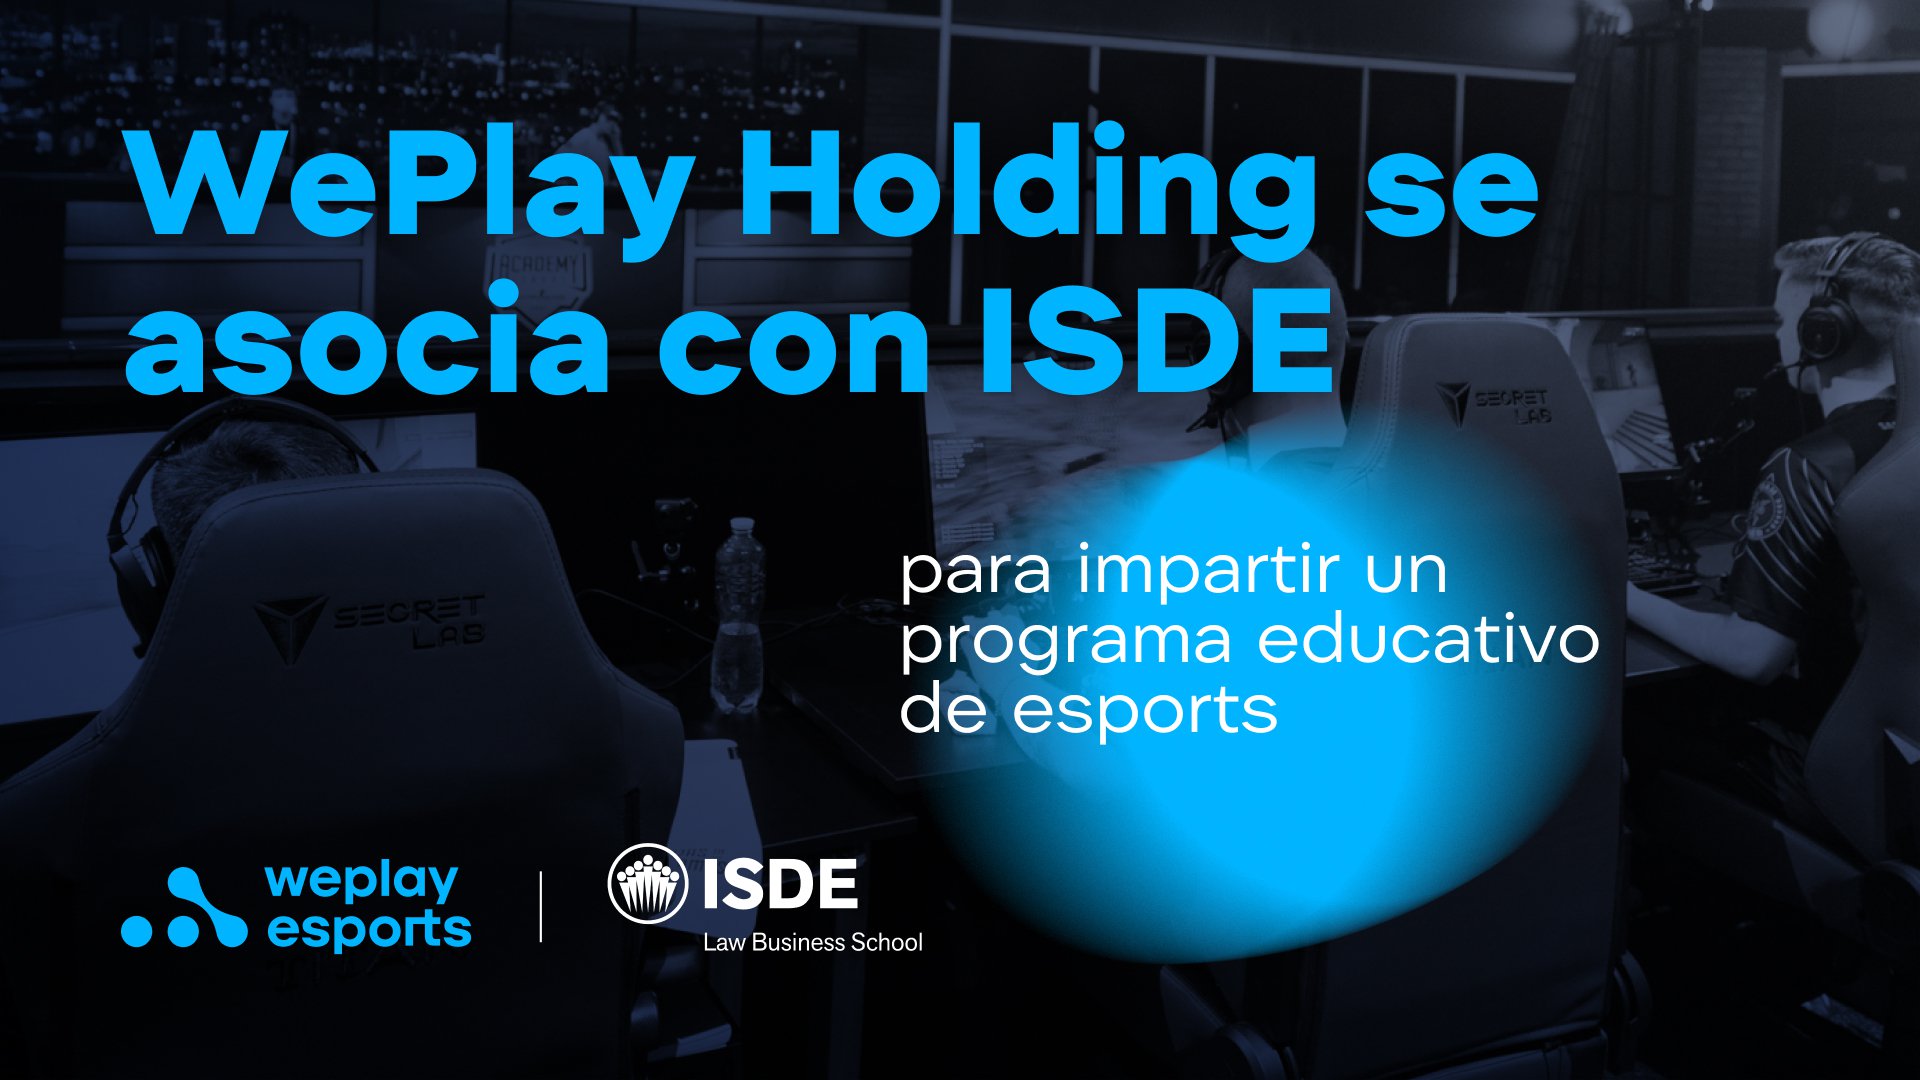 WePlay Holding se asocia con ISDE para impartir un programa educativo de esports. Imagen: WePlay Holding